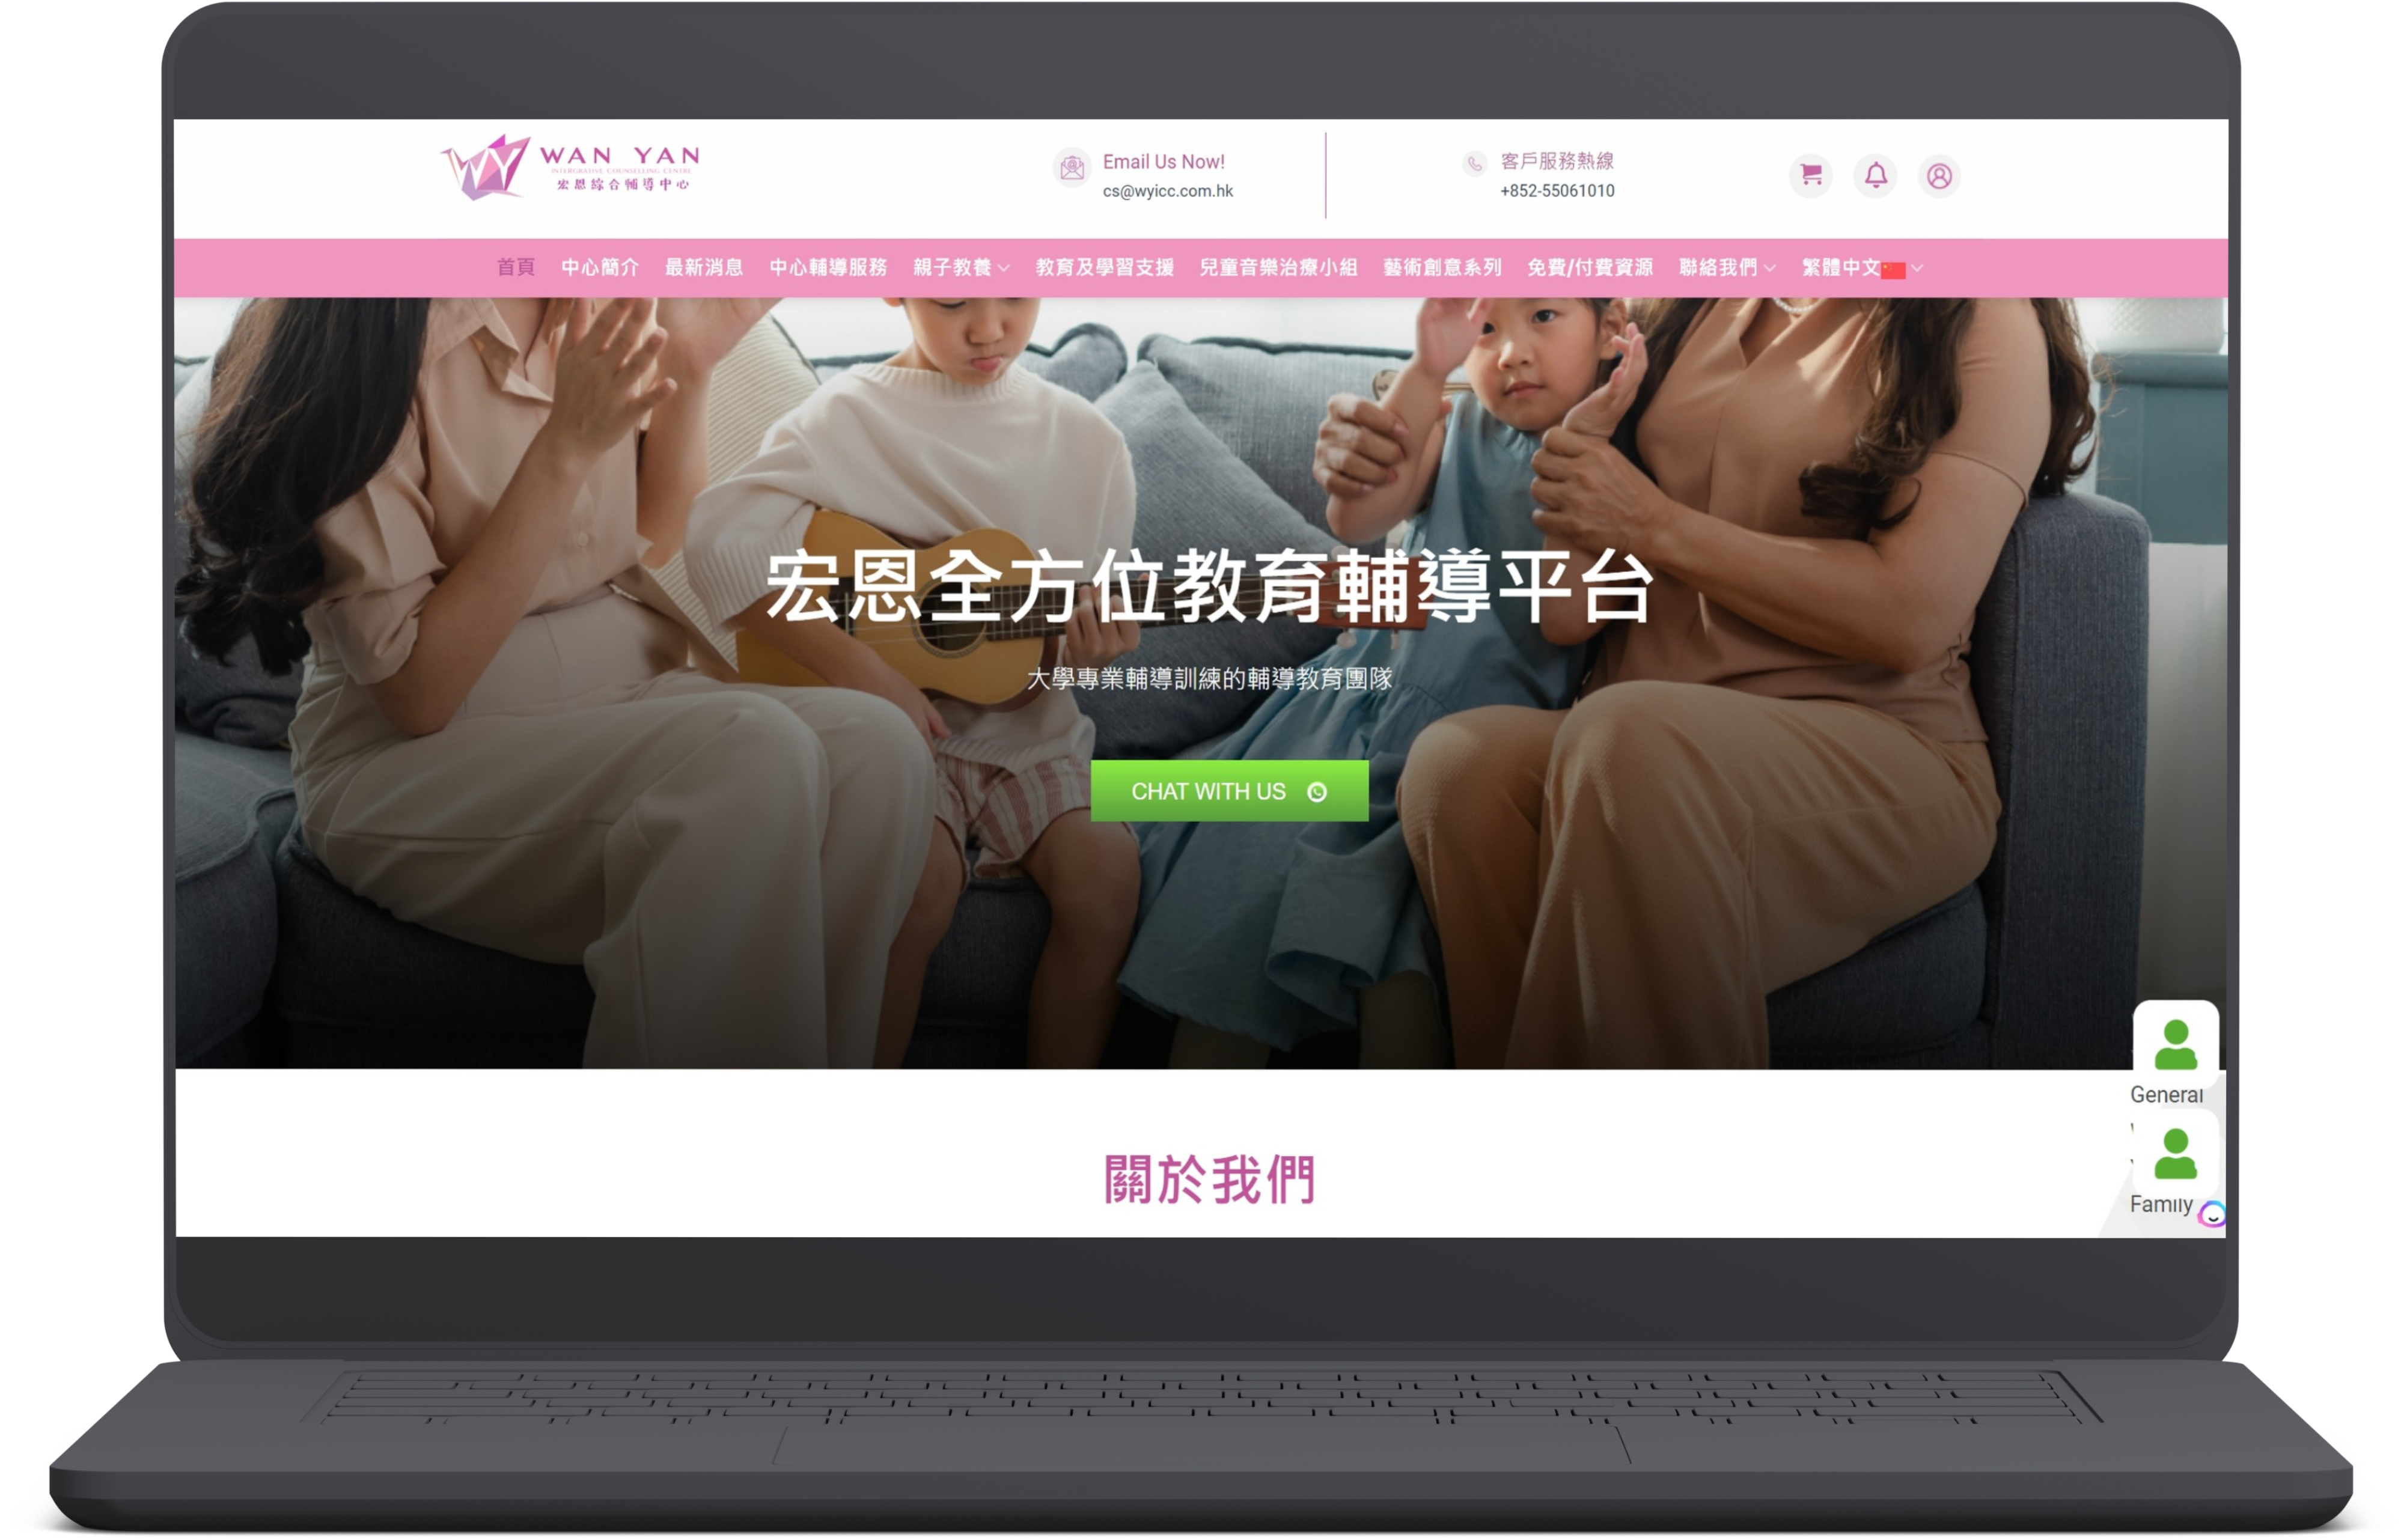 筆記型電腦的螢幕截圖，顯示「完顏」的網站，該網站提供家庭諮詢服務，頂部有「與我們聊天」按鈕和導航選項。該頁面是中文的。